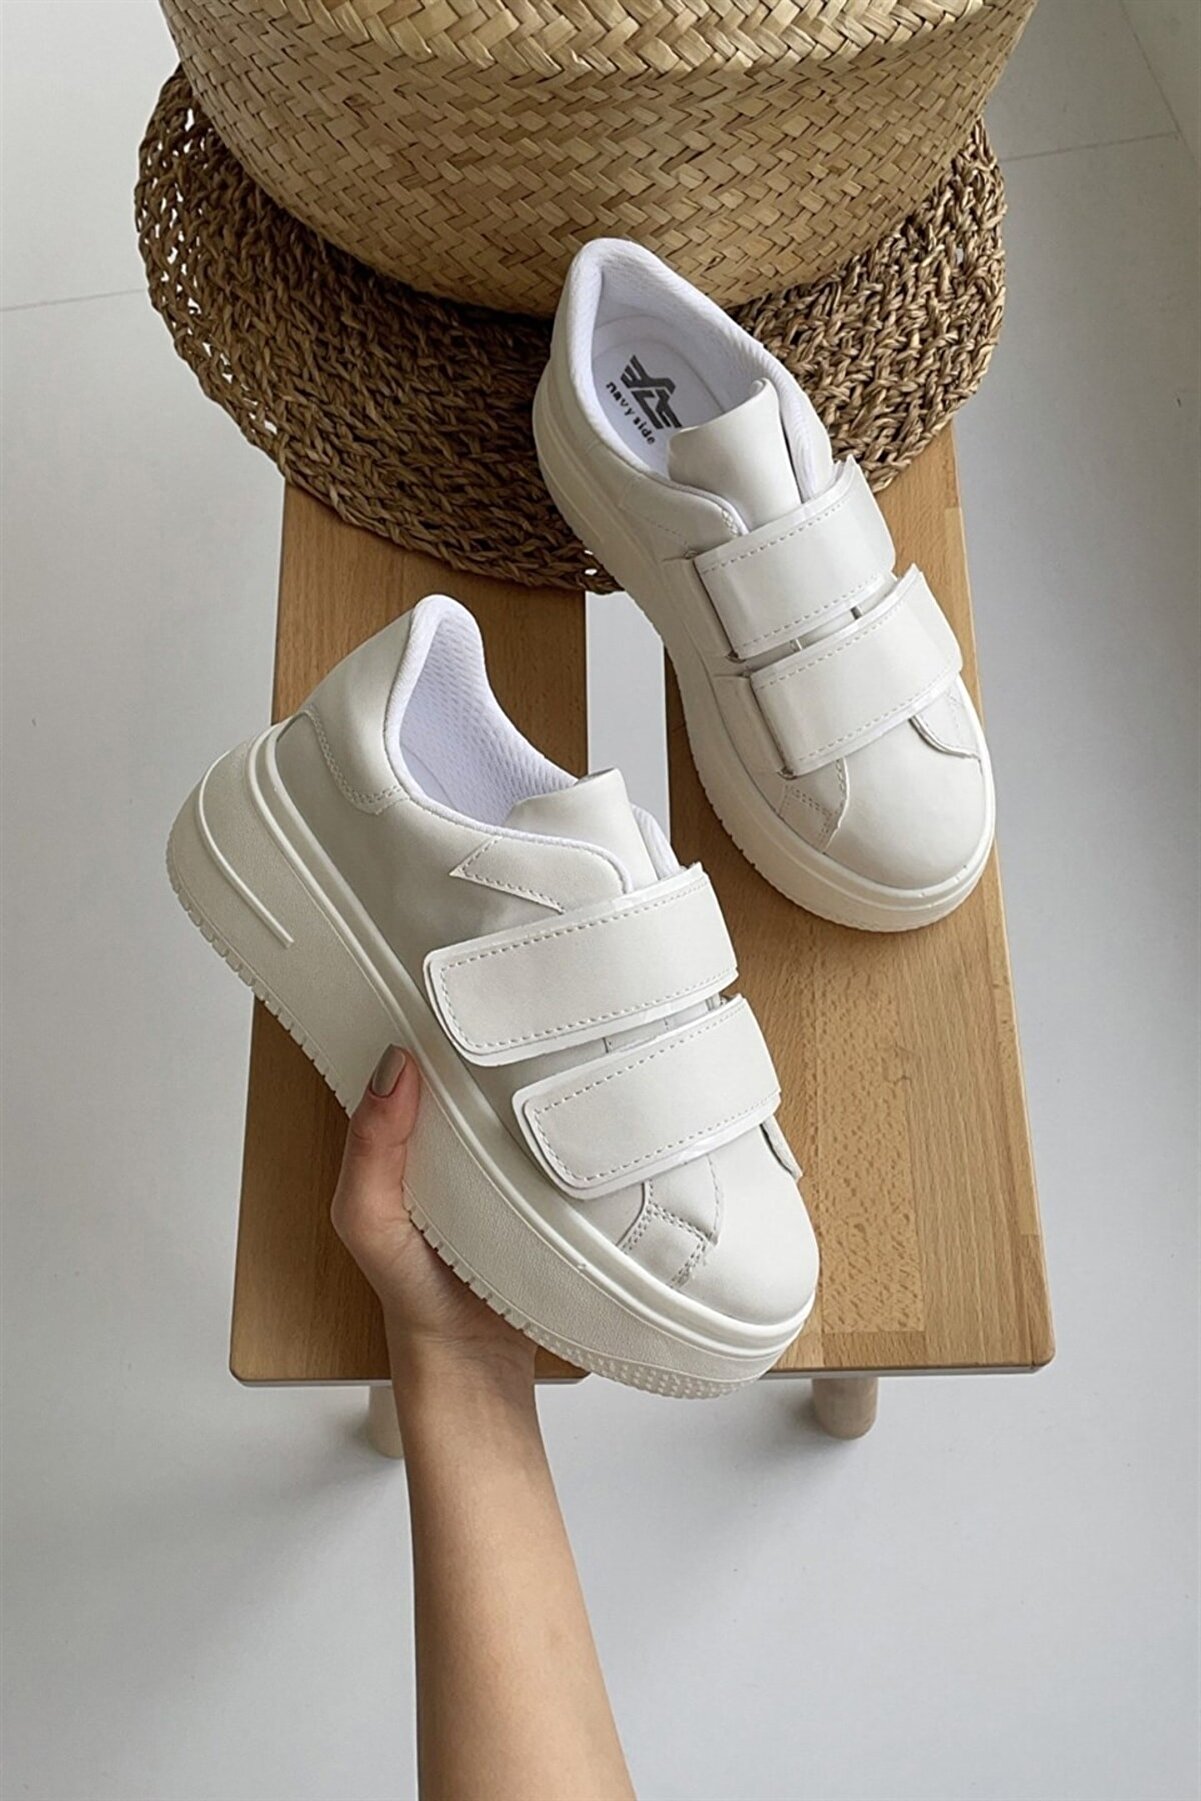 NAVYSIDE Kadın Beyaz Cırt Cırtlı Sneaker Spor Ayakkabı-Taban 5 cm-Yürüyüş Ayakkabısı Yüksek Tabanlı Bantlı